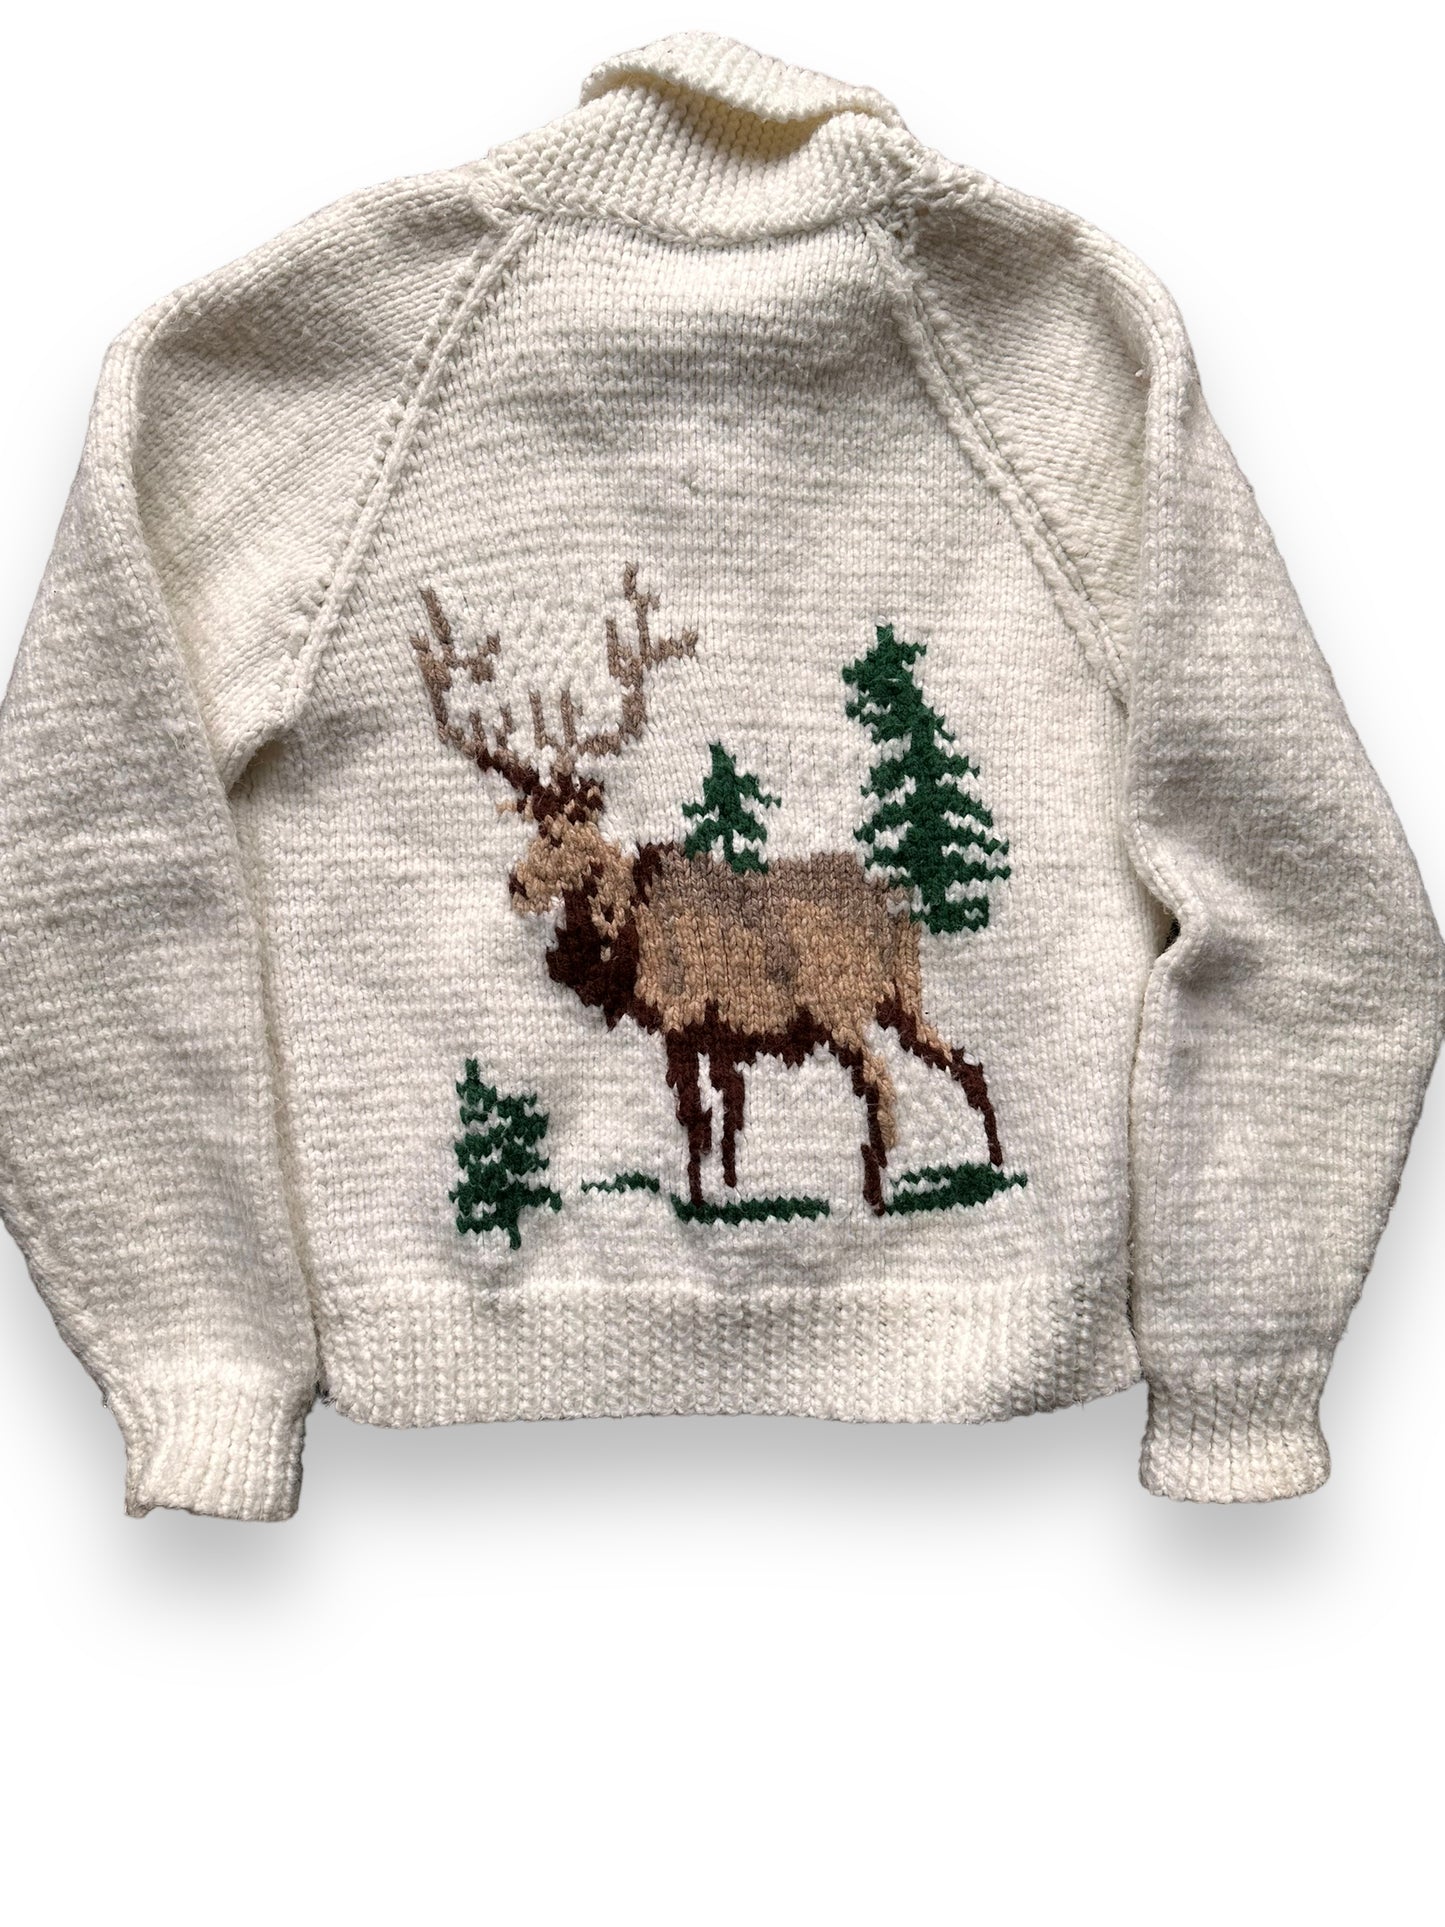 Rear Detail on Vintage Deer Wool Cowichan Style Sweater SZ M | Vintage Cowichan Sweaters Seattle | Barn Owl Vintage Seattle